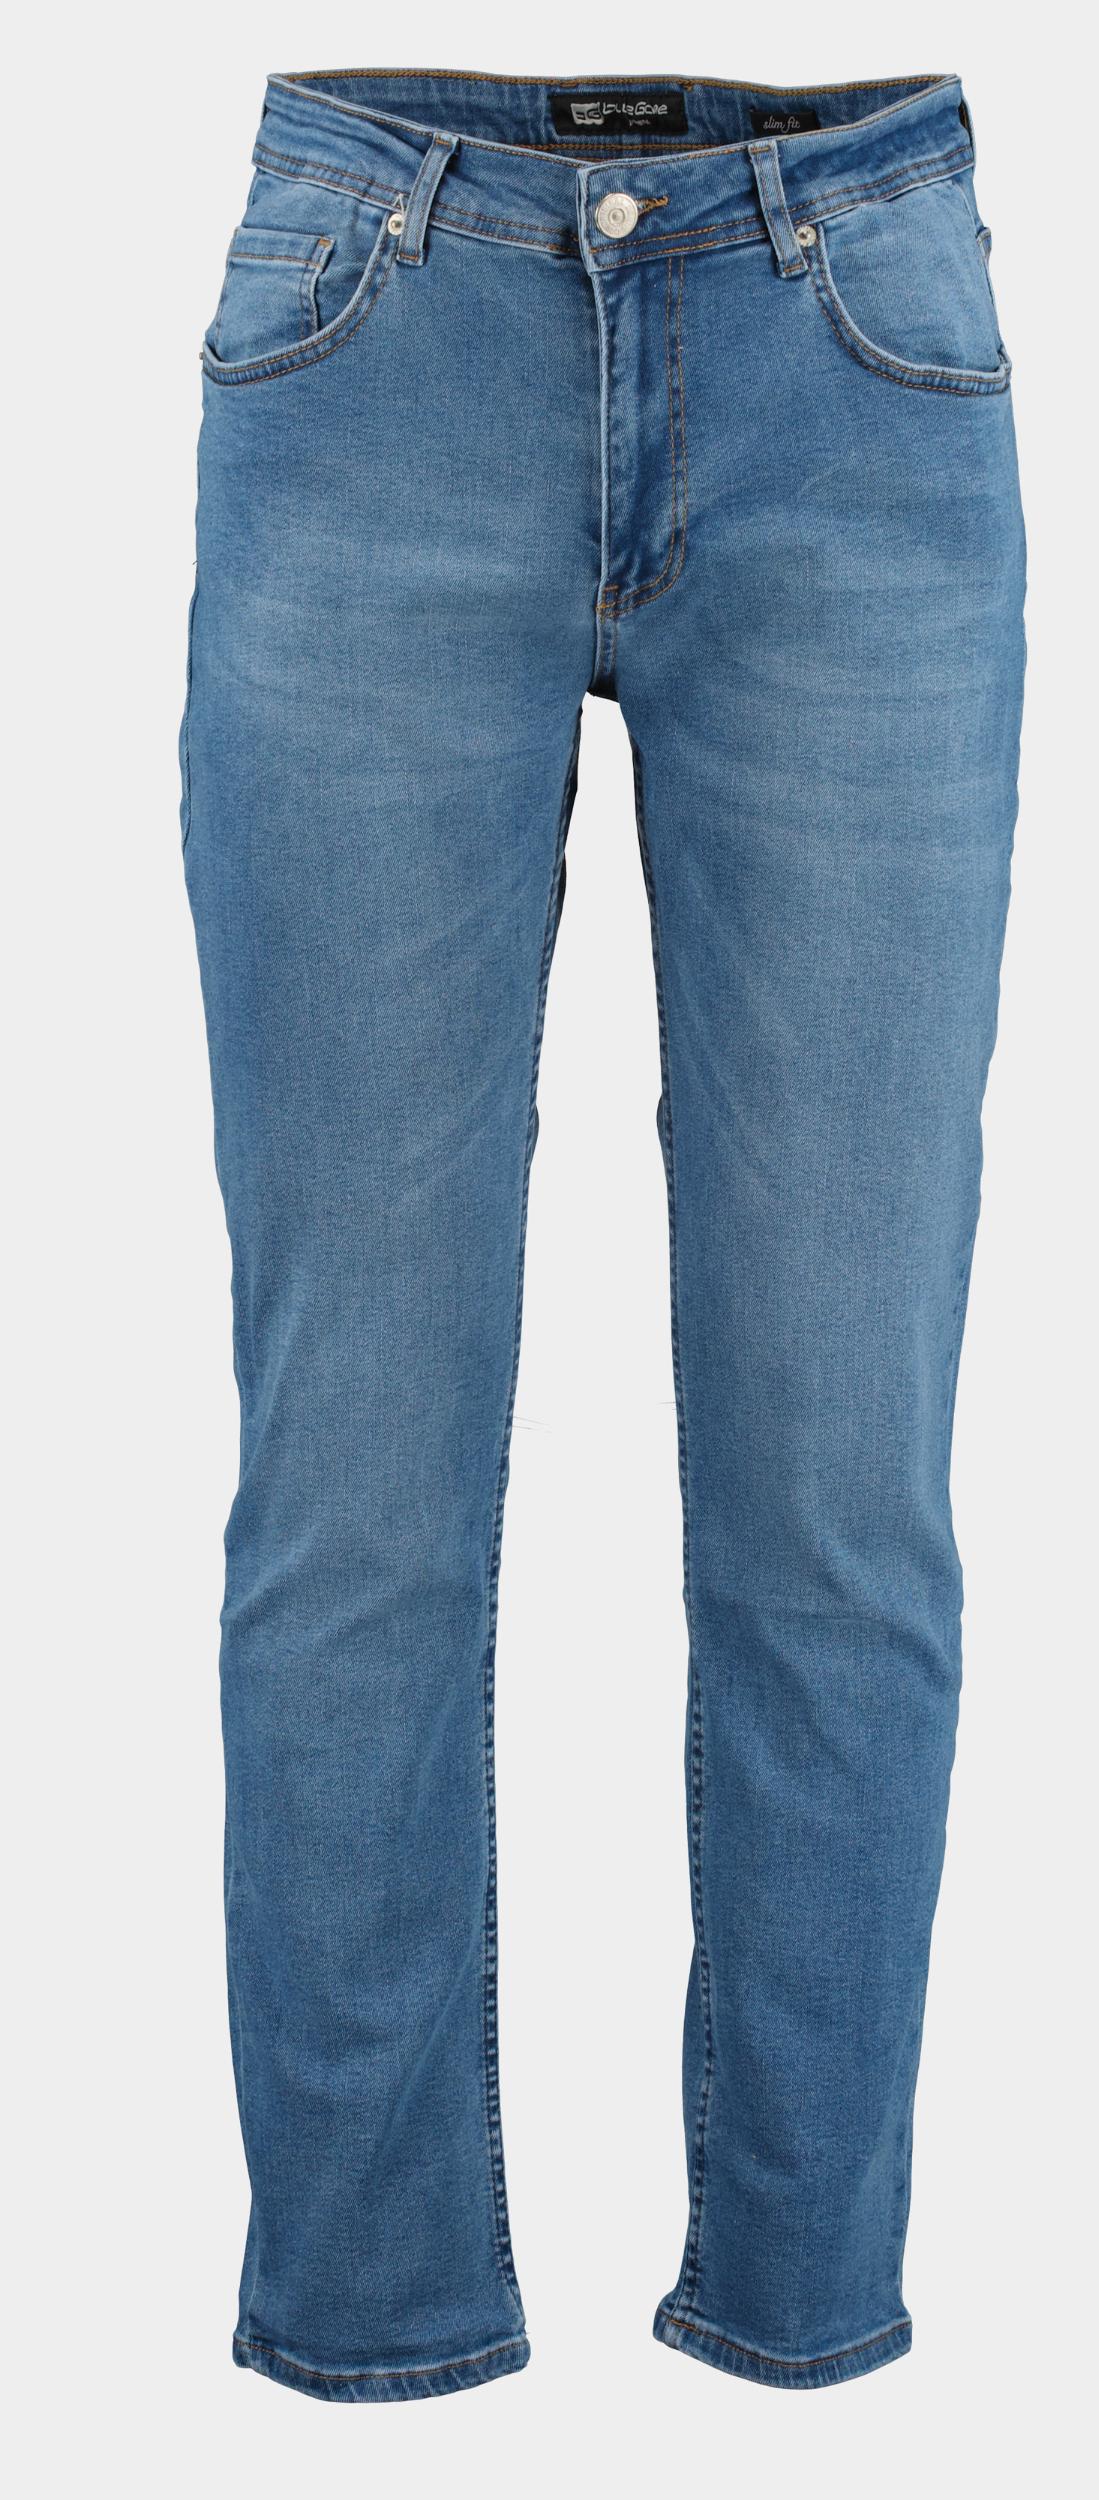 Afbeelding van Blue Game 5-pocket jeans 9001/light blue